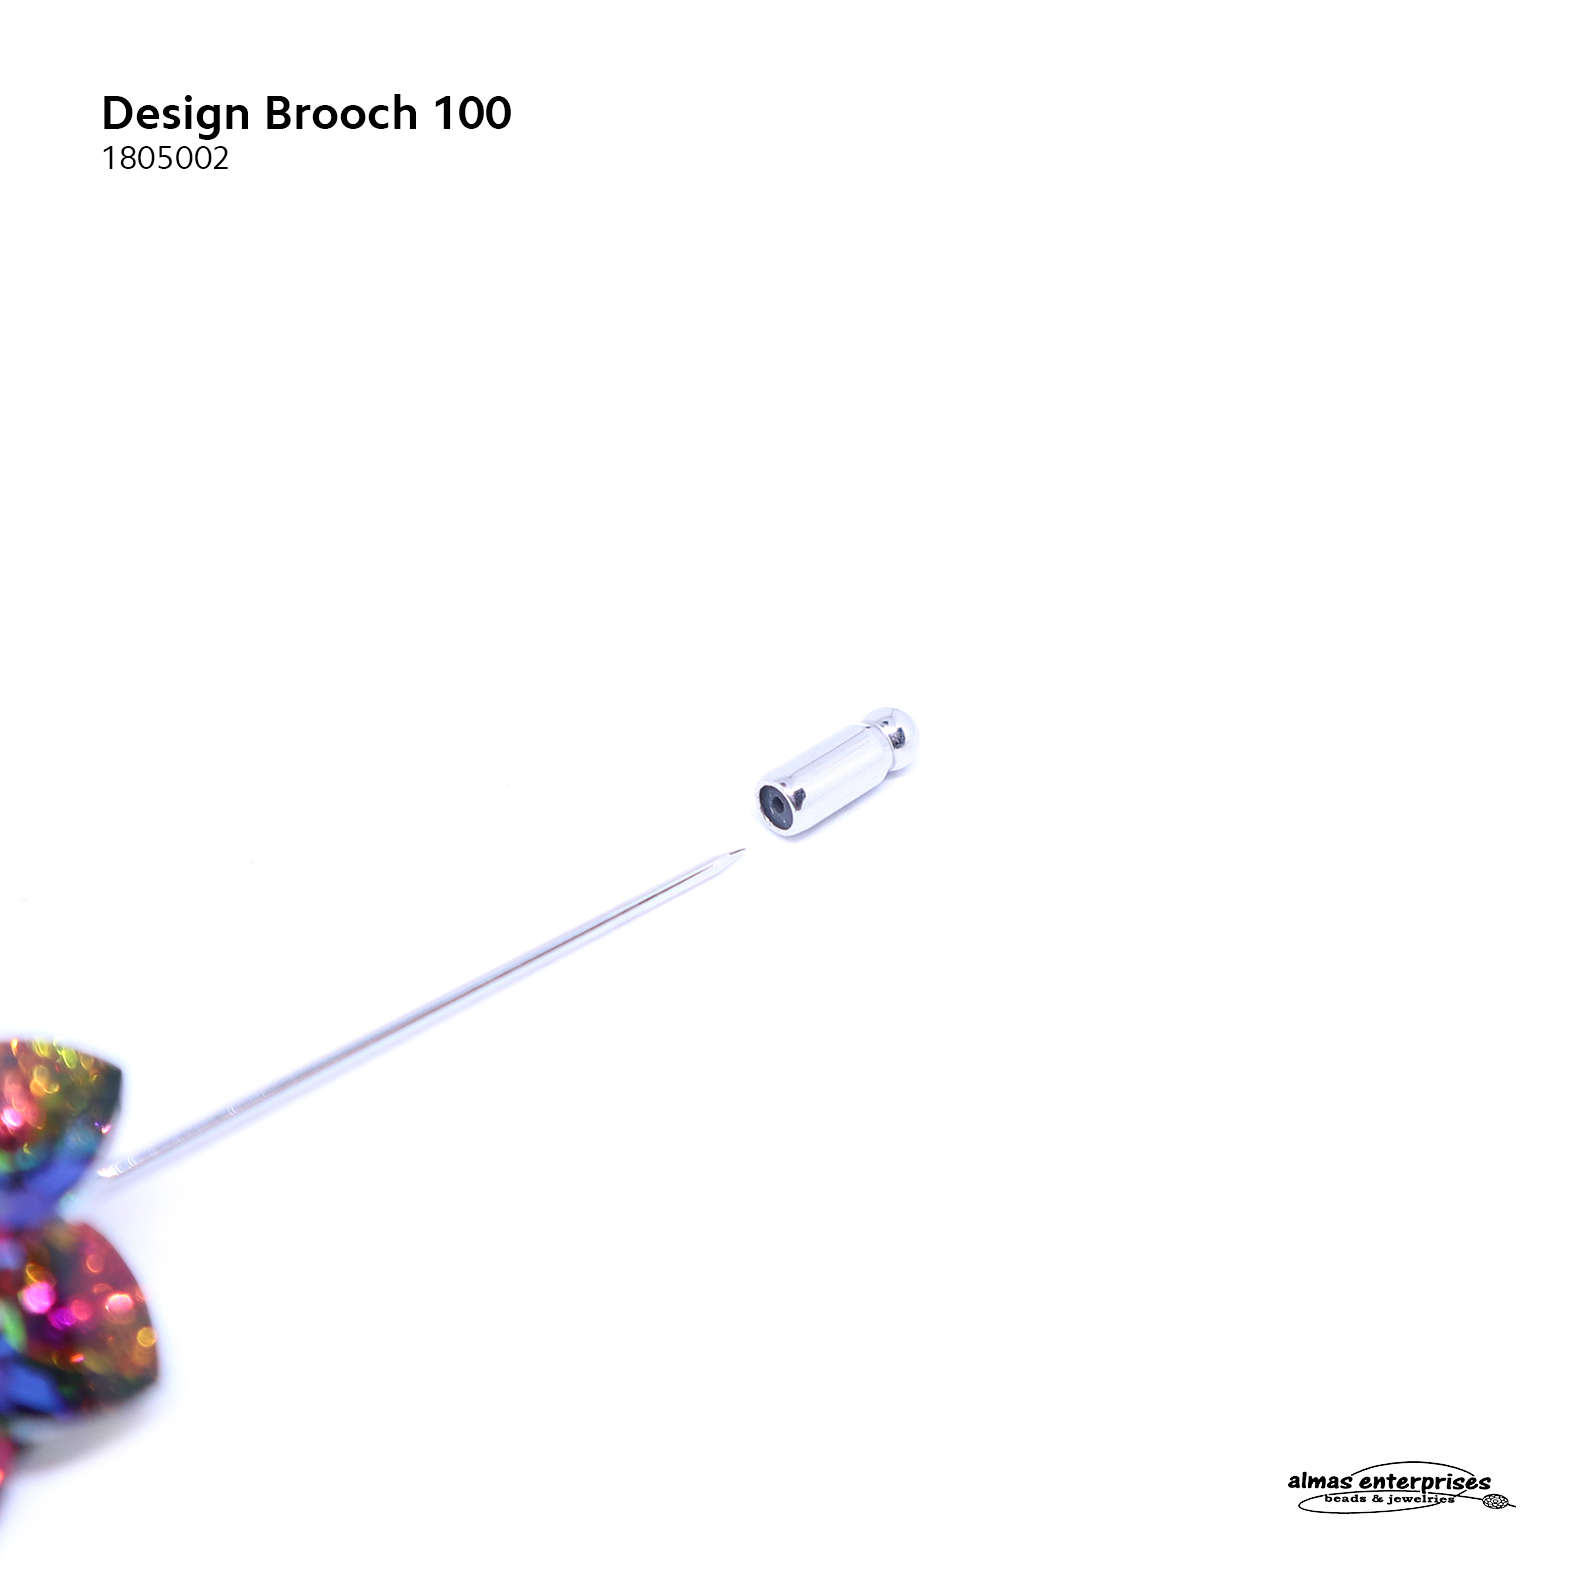  Design Brooch 100